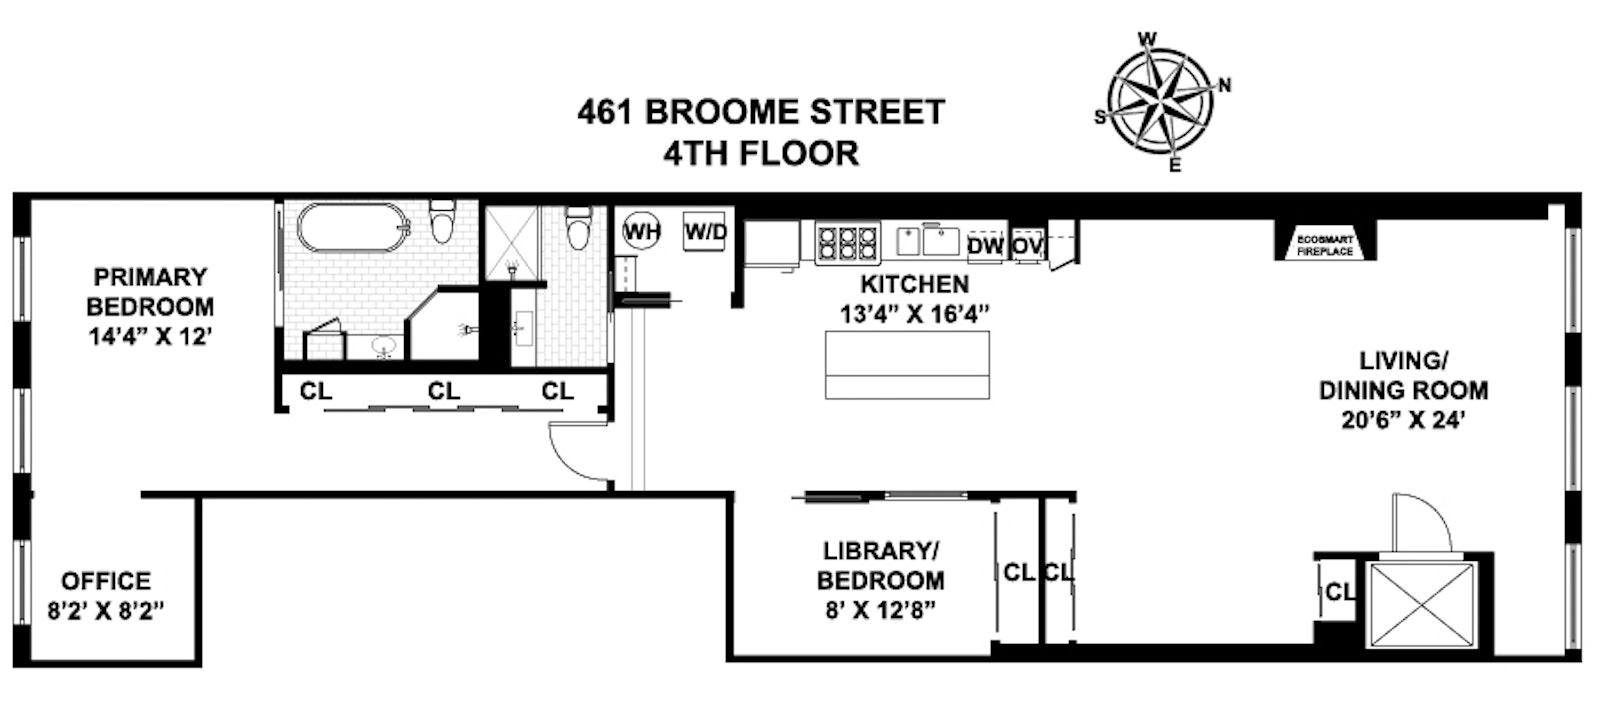 Floorplan for 461 Broome Street, 4